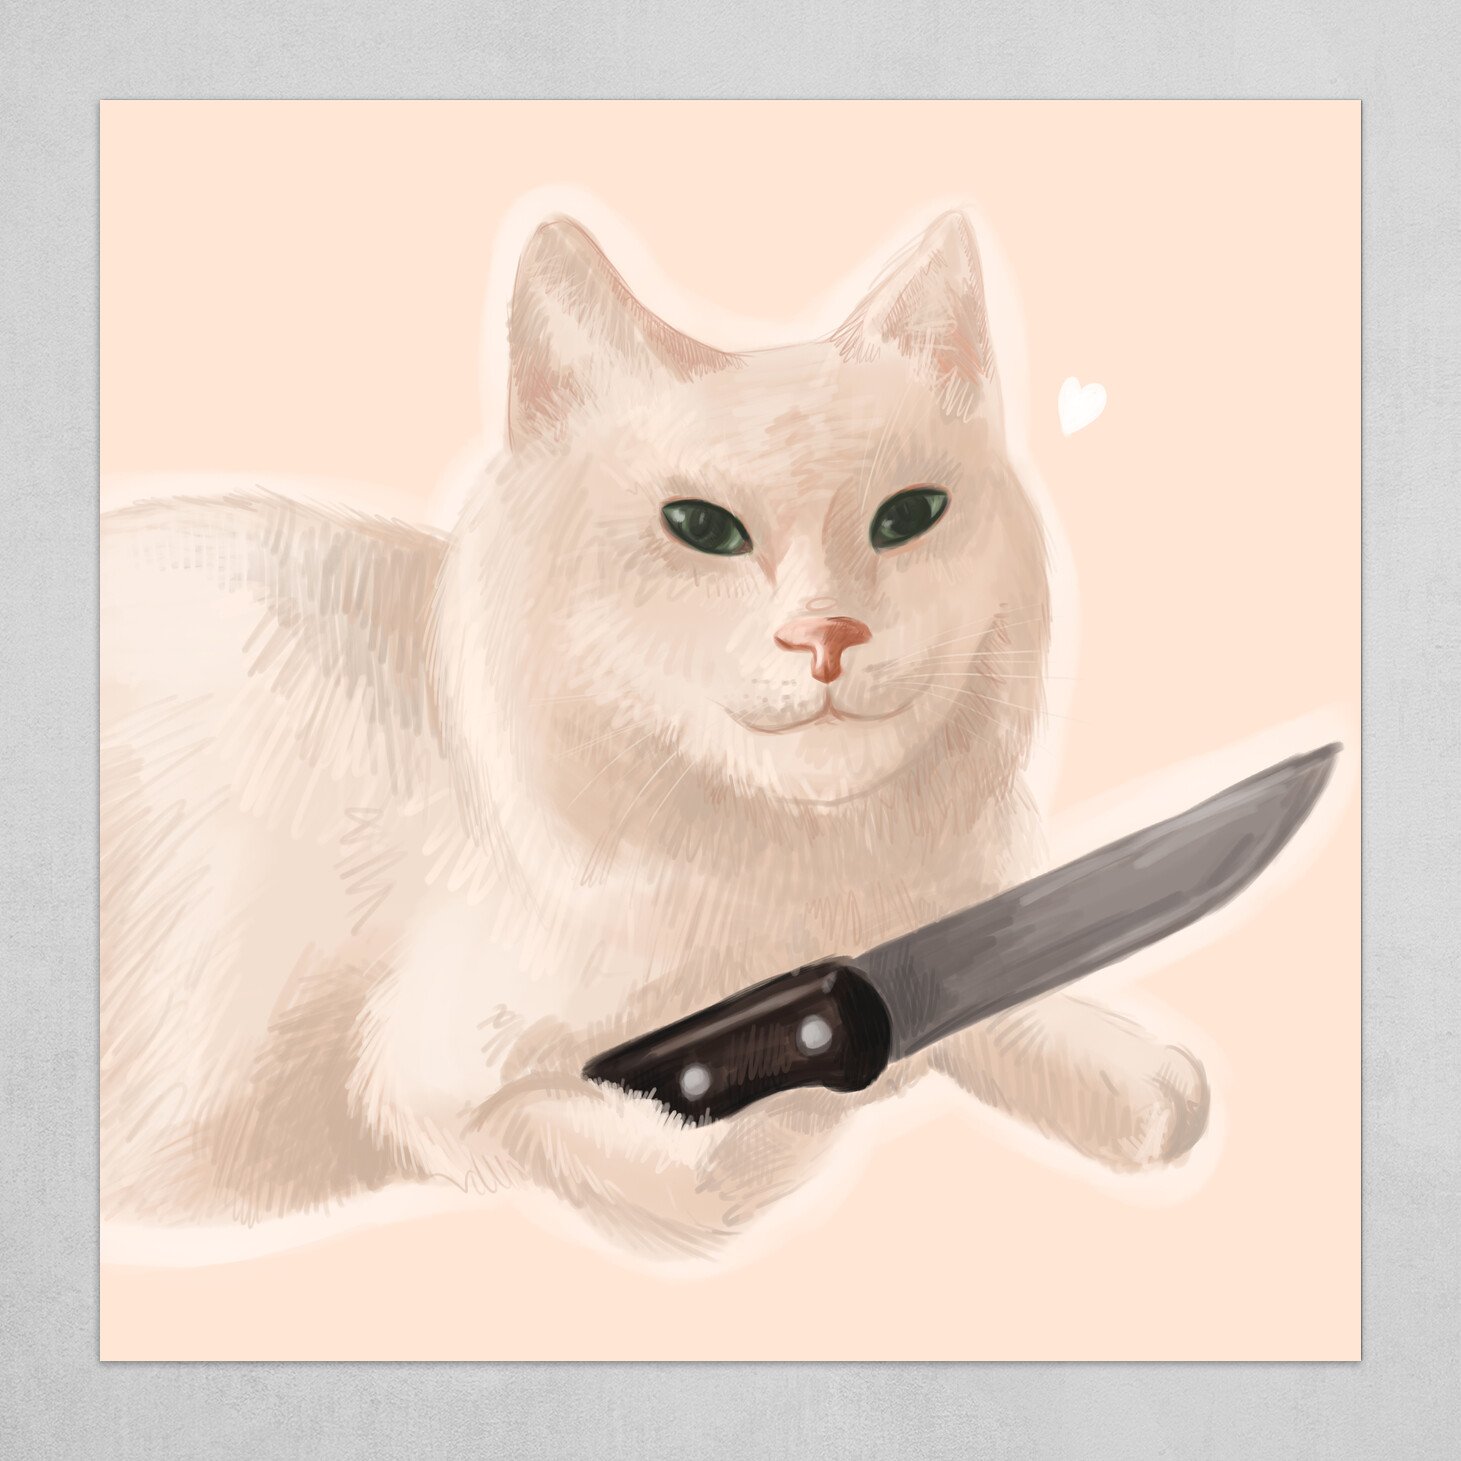 Ảnh mèo cầm dao là một chủ đề hot trong thế giới mèo hiện nay. Xem ảnh và khám phá những mánh khóe tinh quái của chúng.